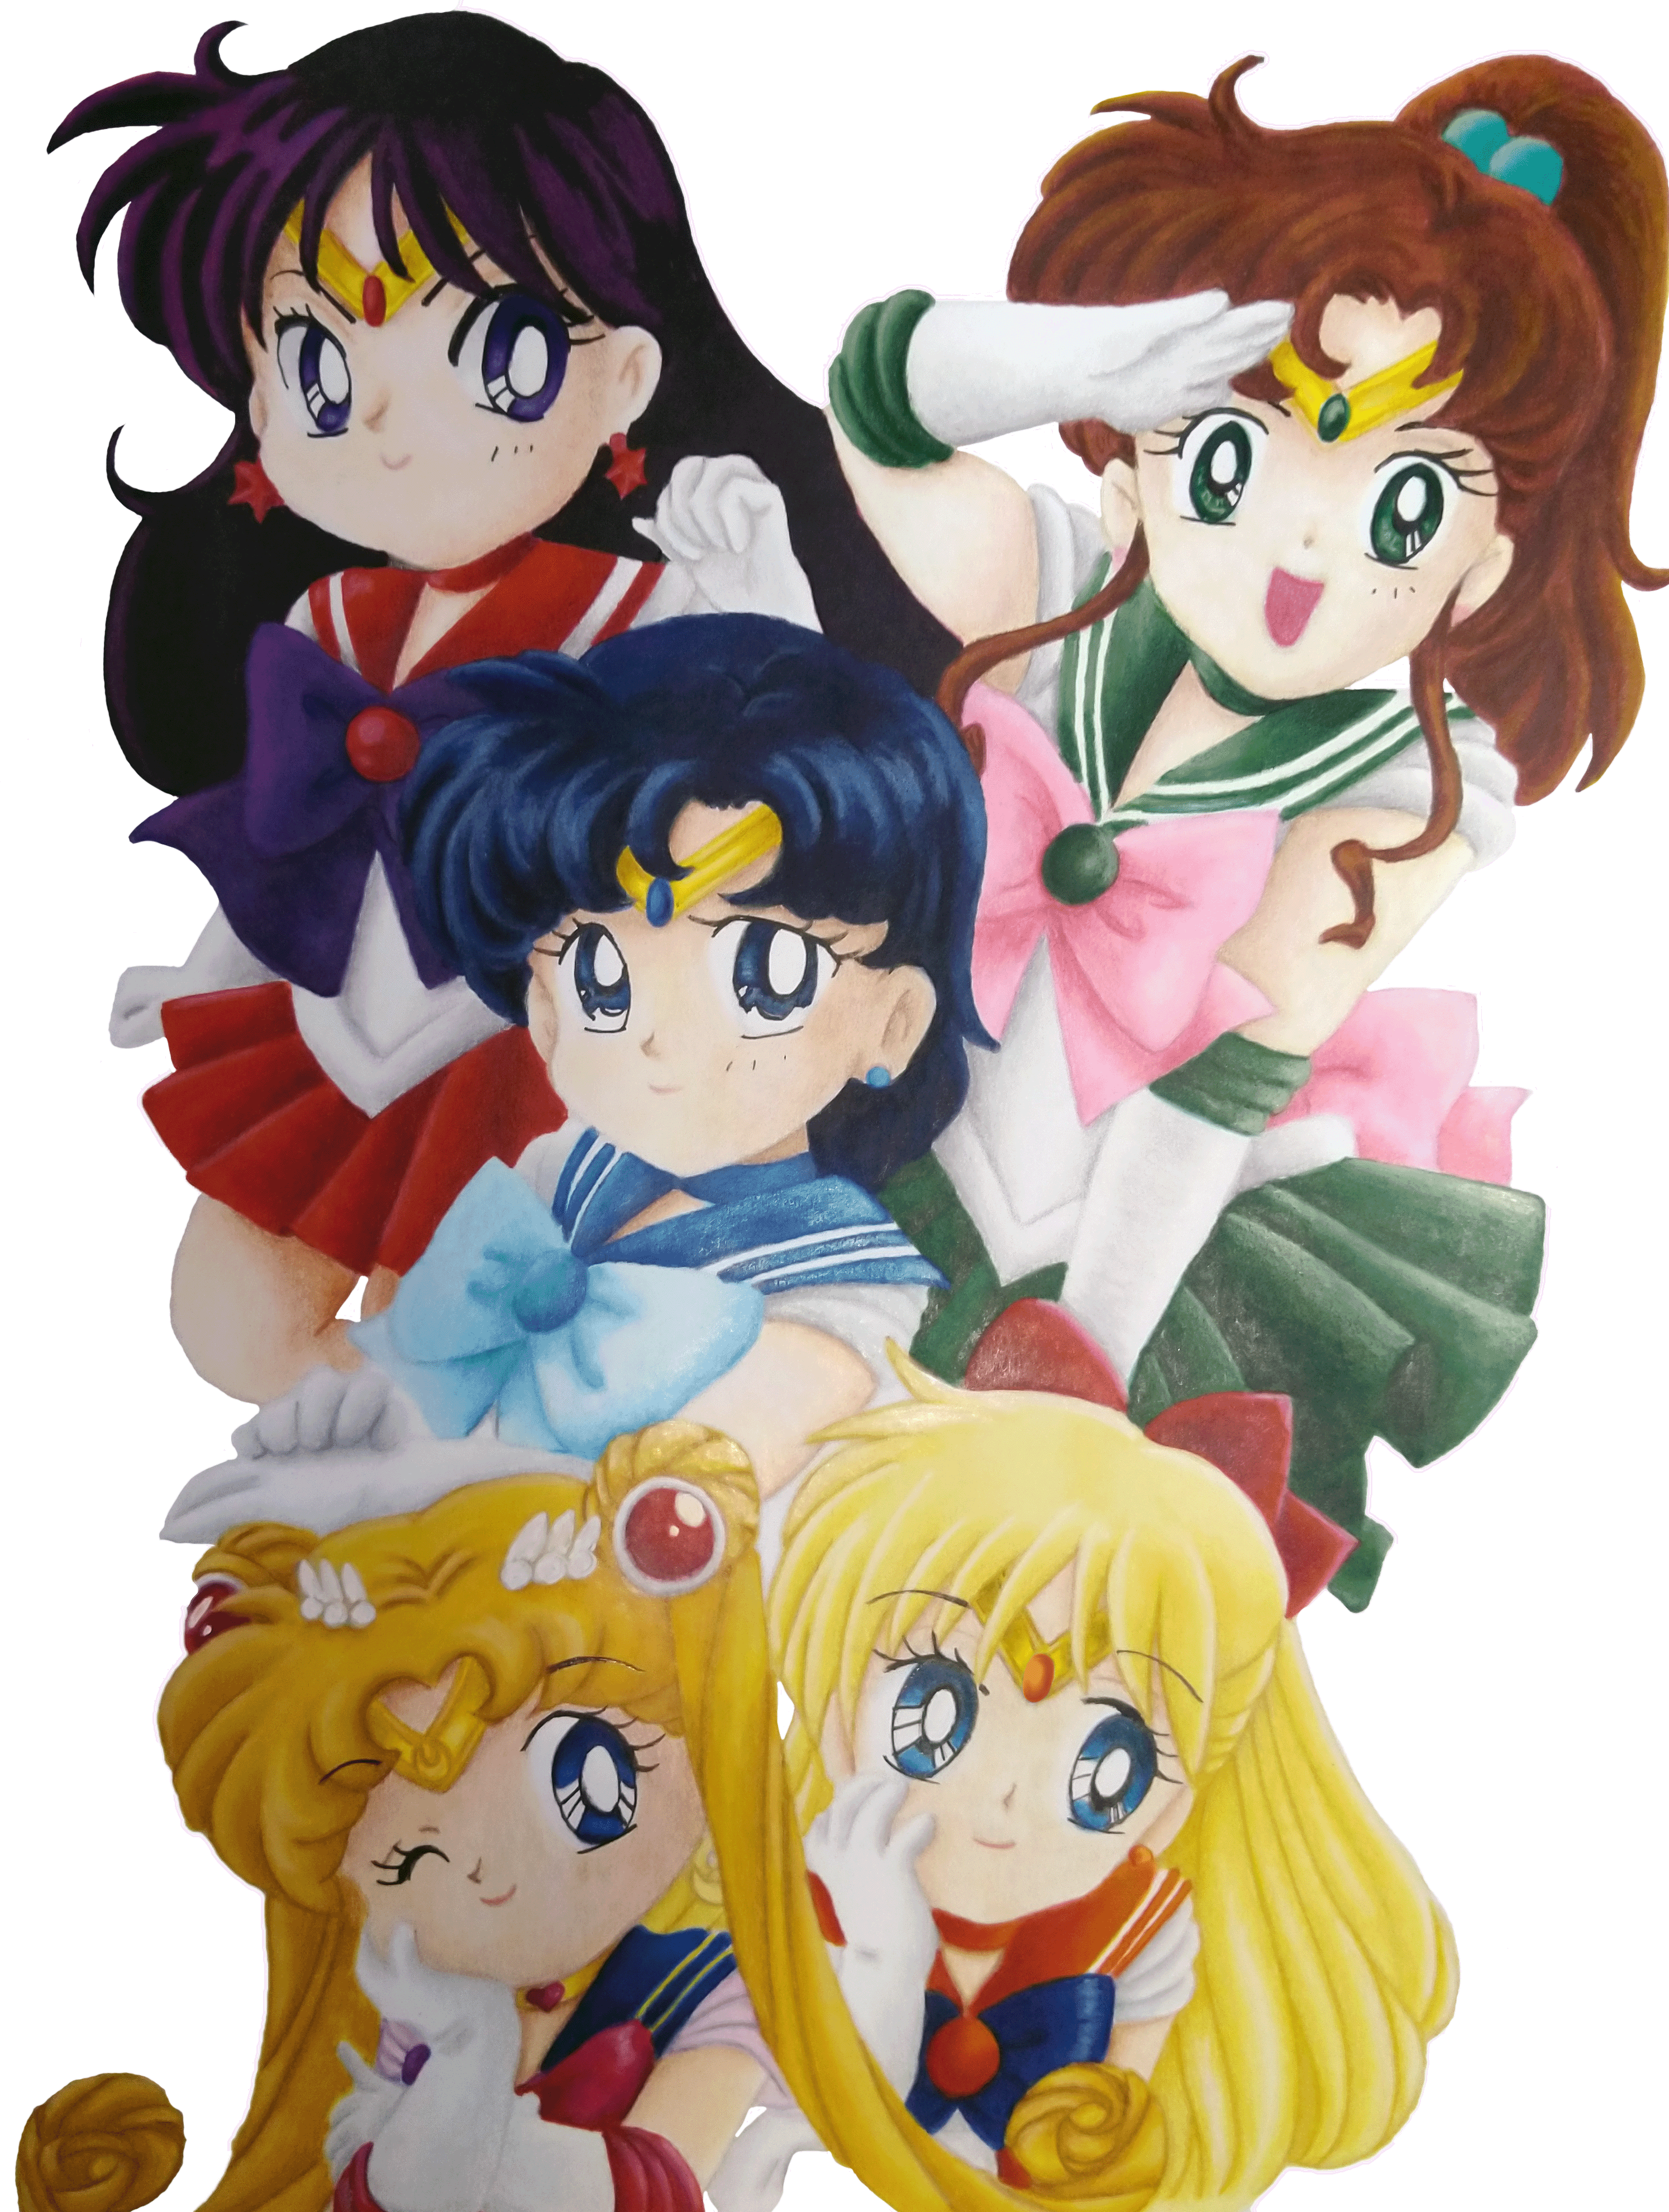 Sailor Chibi Moon : Sailor Moon Crystal by phantazystudio on